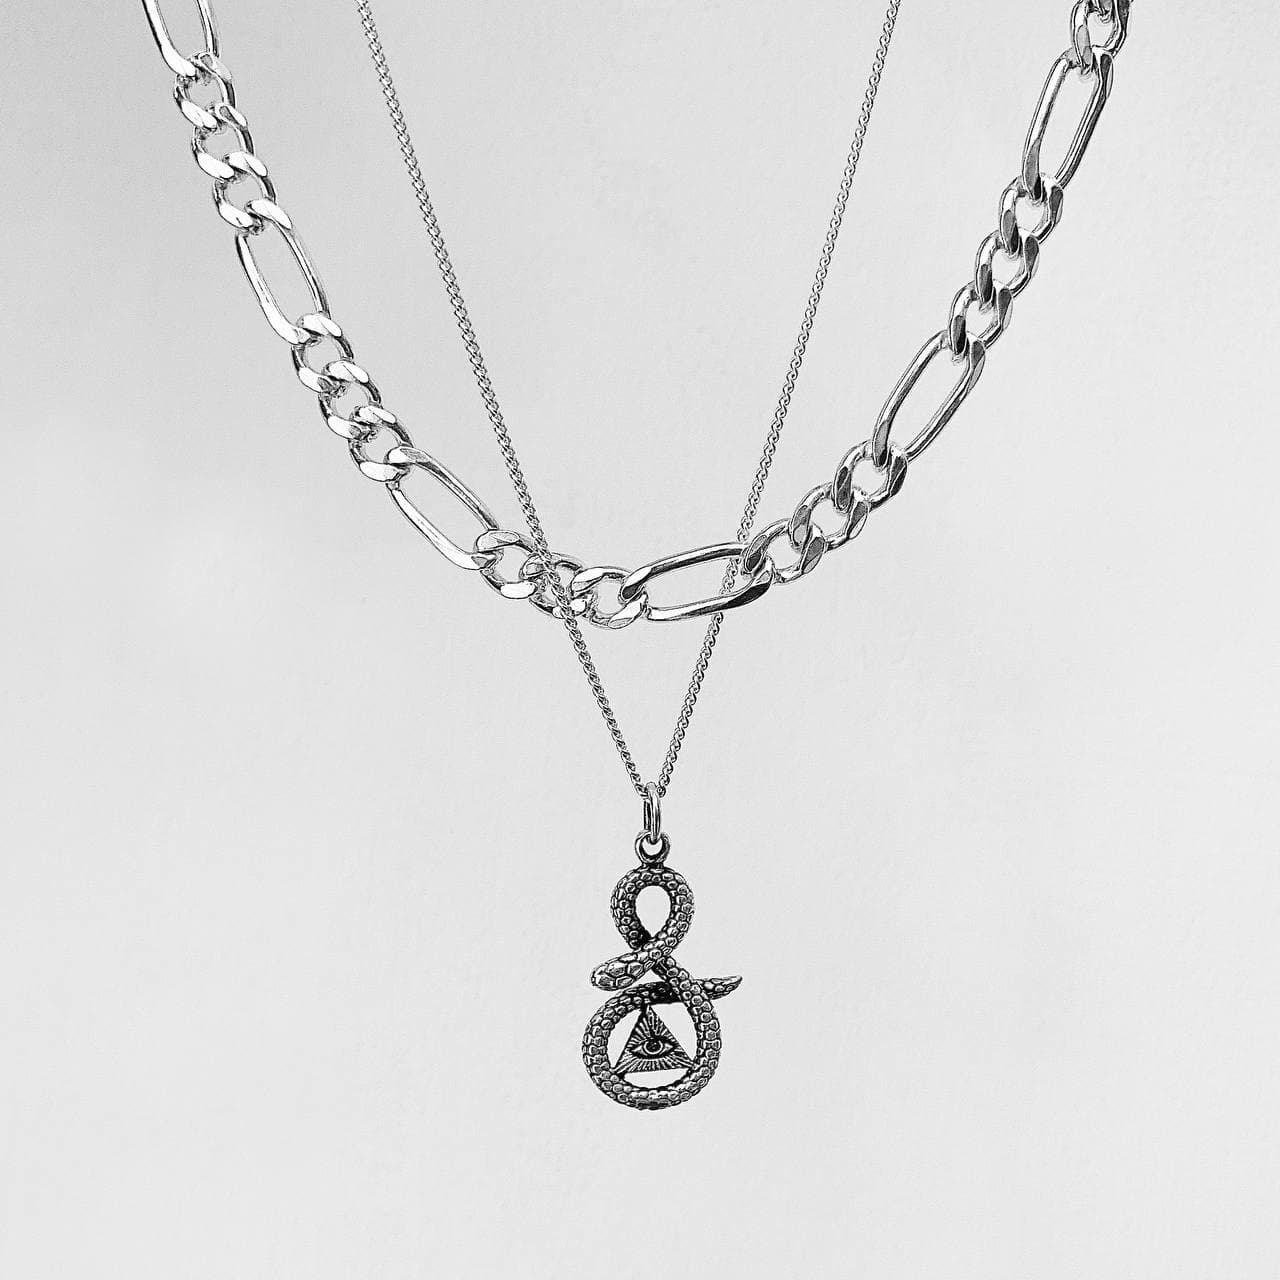 Collar de Serpiente con ojo simbólico, elaborado en plata 950 y detalles quemados.